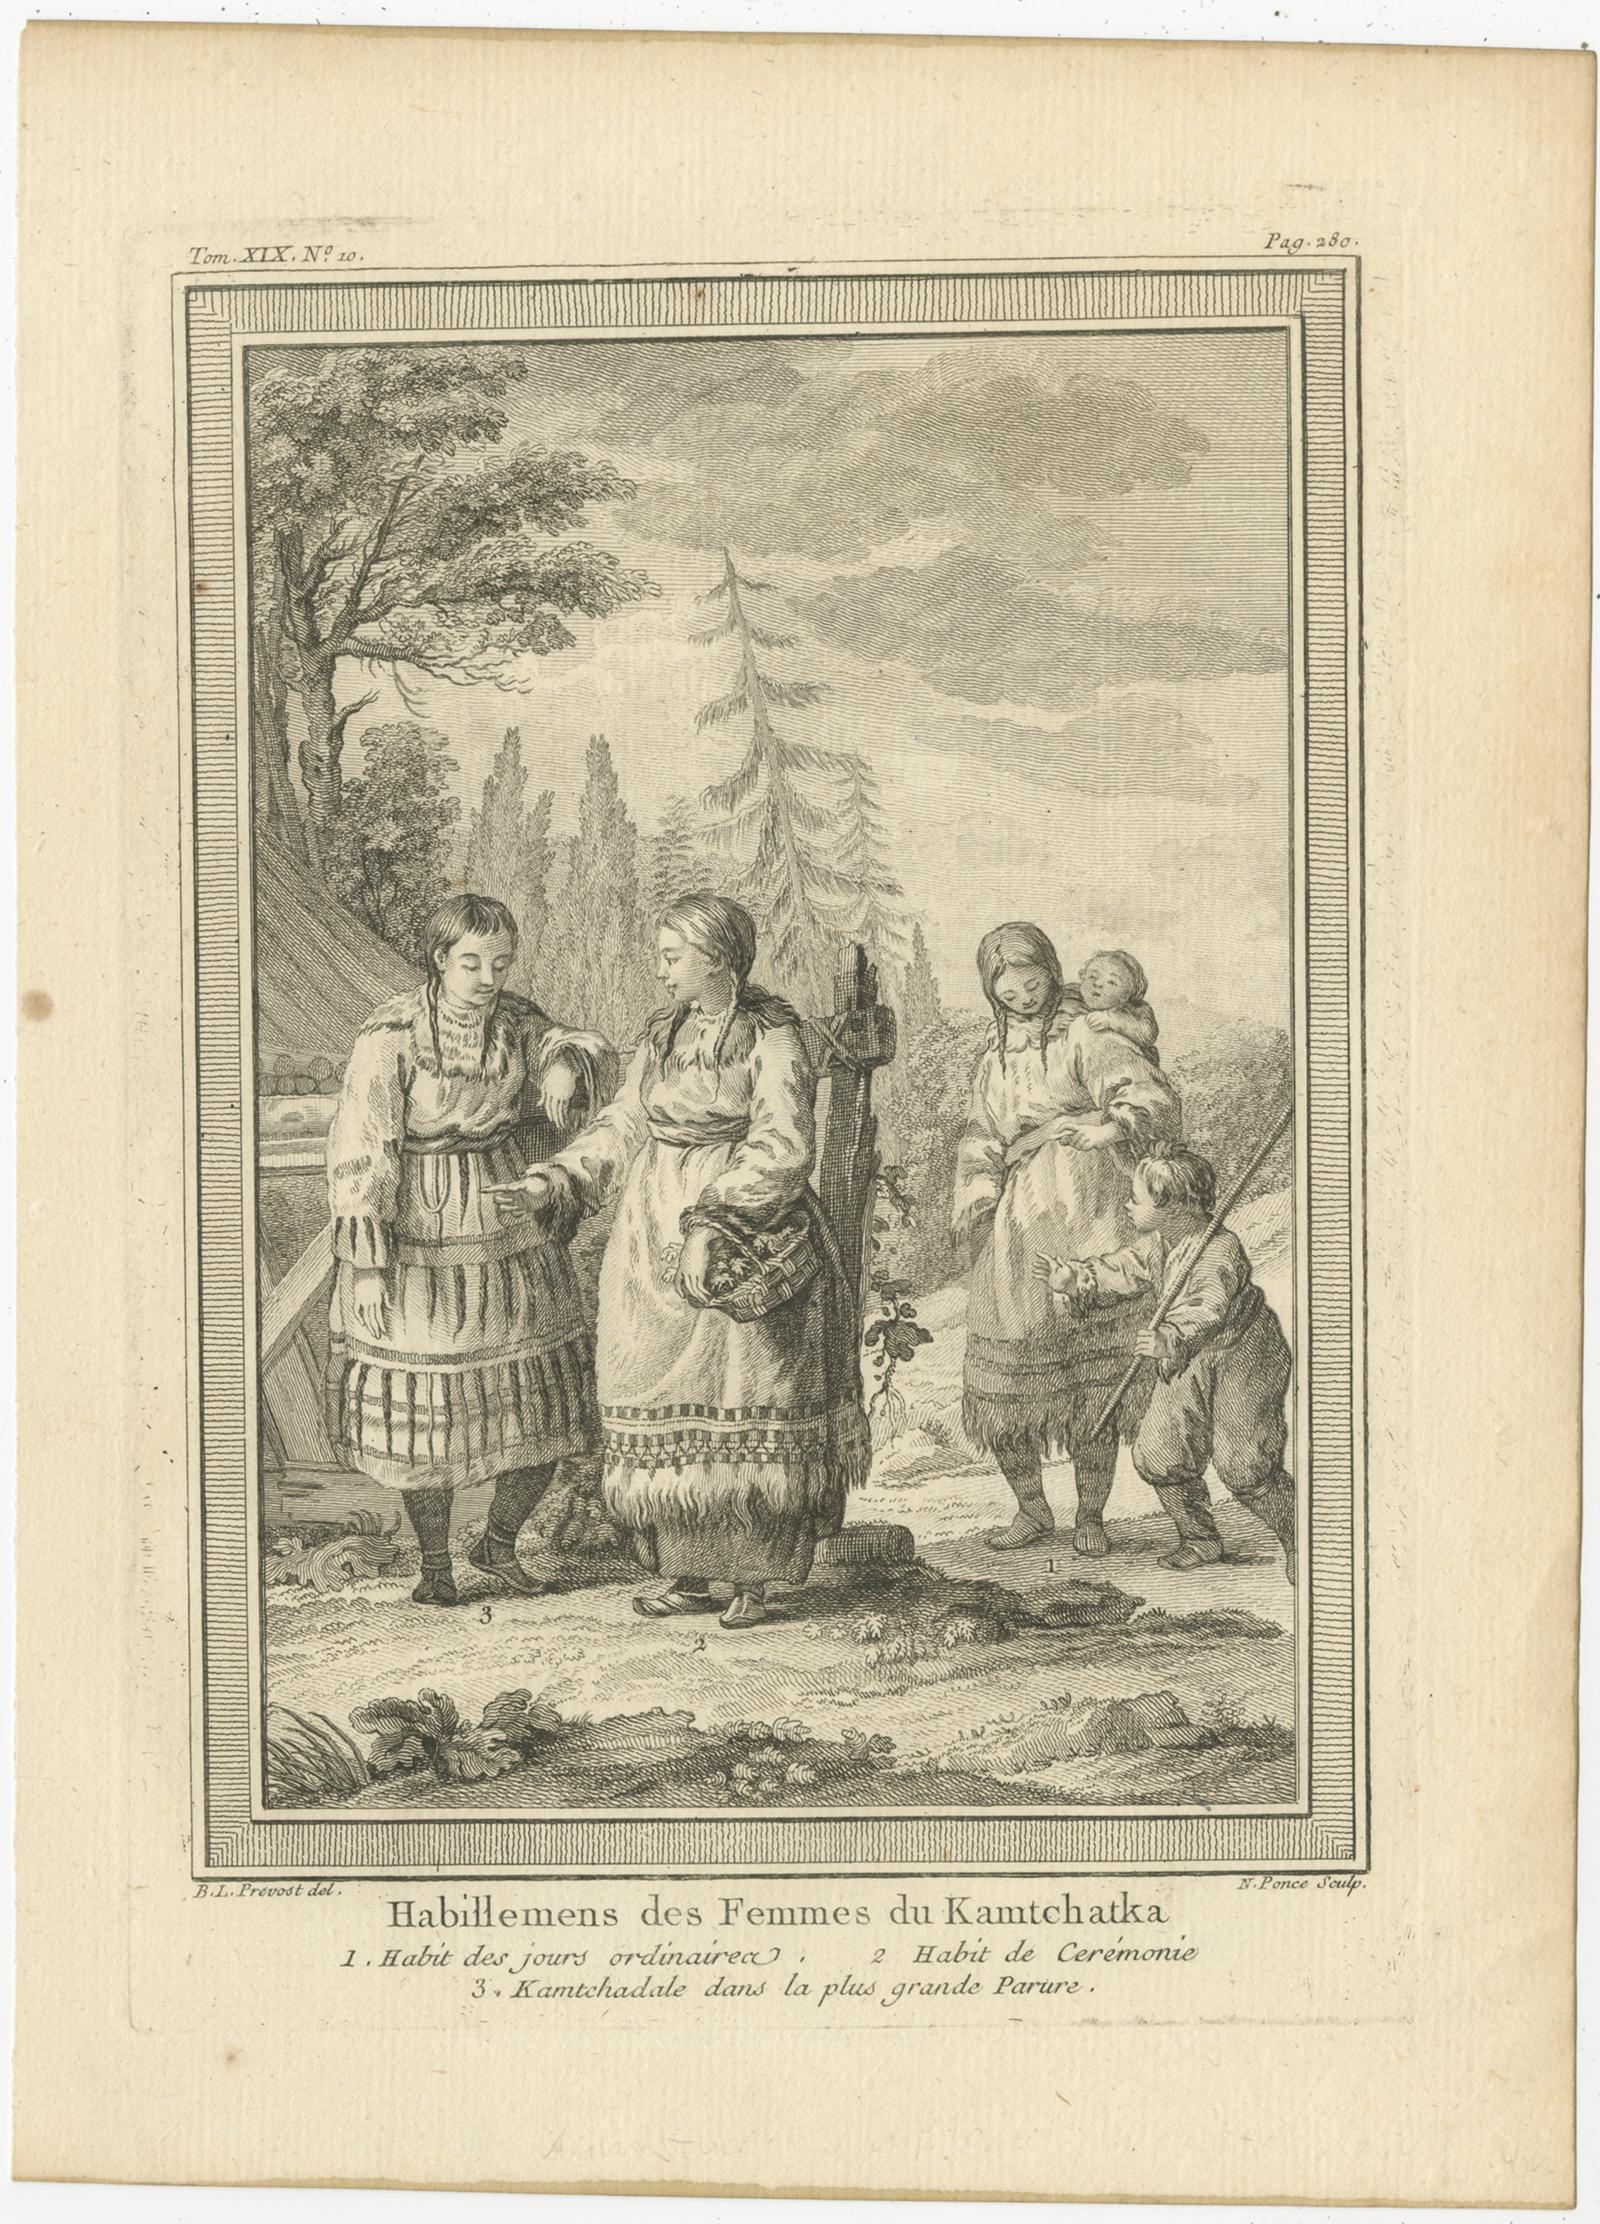 Description : Estampe ancienne intitulée 'Habillemens des Femmes du Kamtchatka'. Gravure sur cuivre de femmes Kamchadal. Cette gravure provient du volume 19 de l'